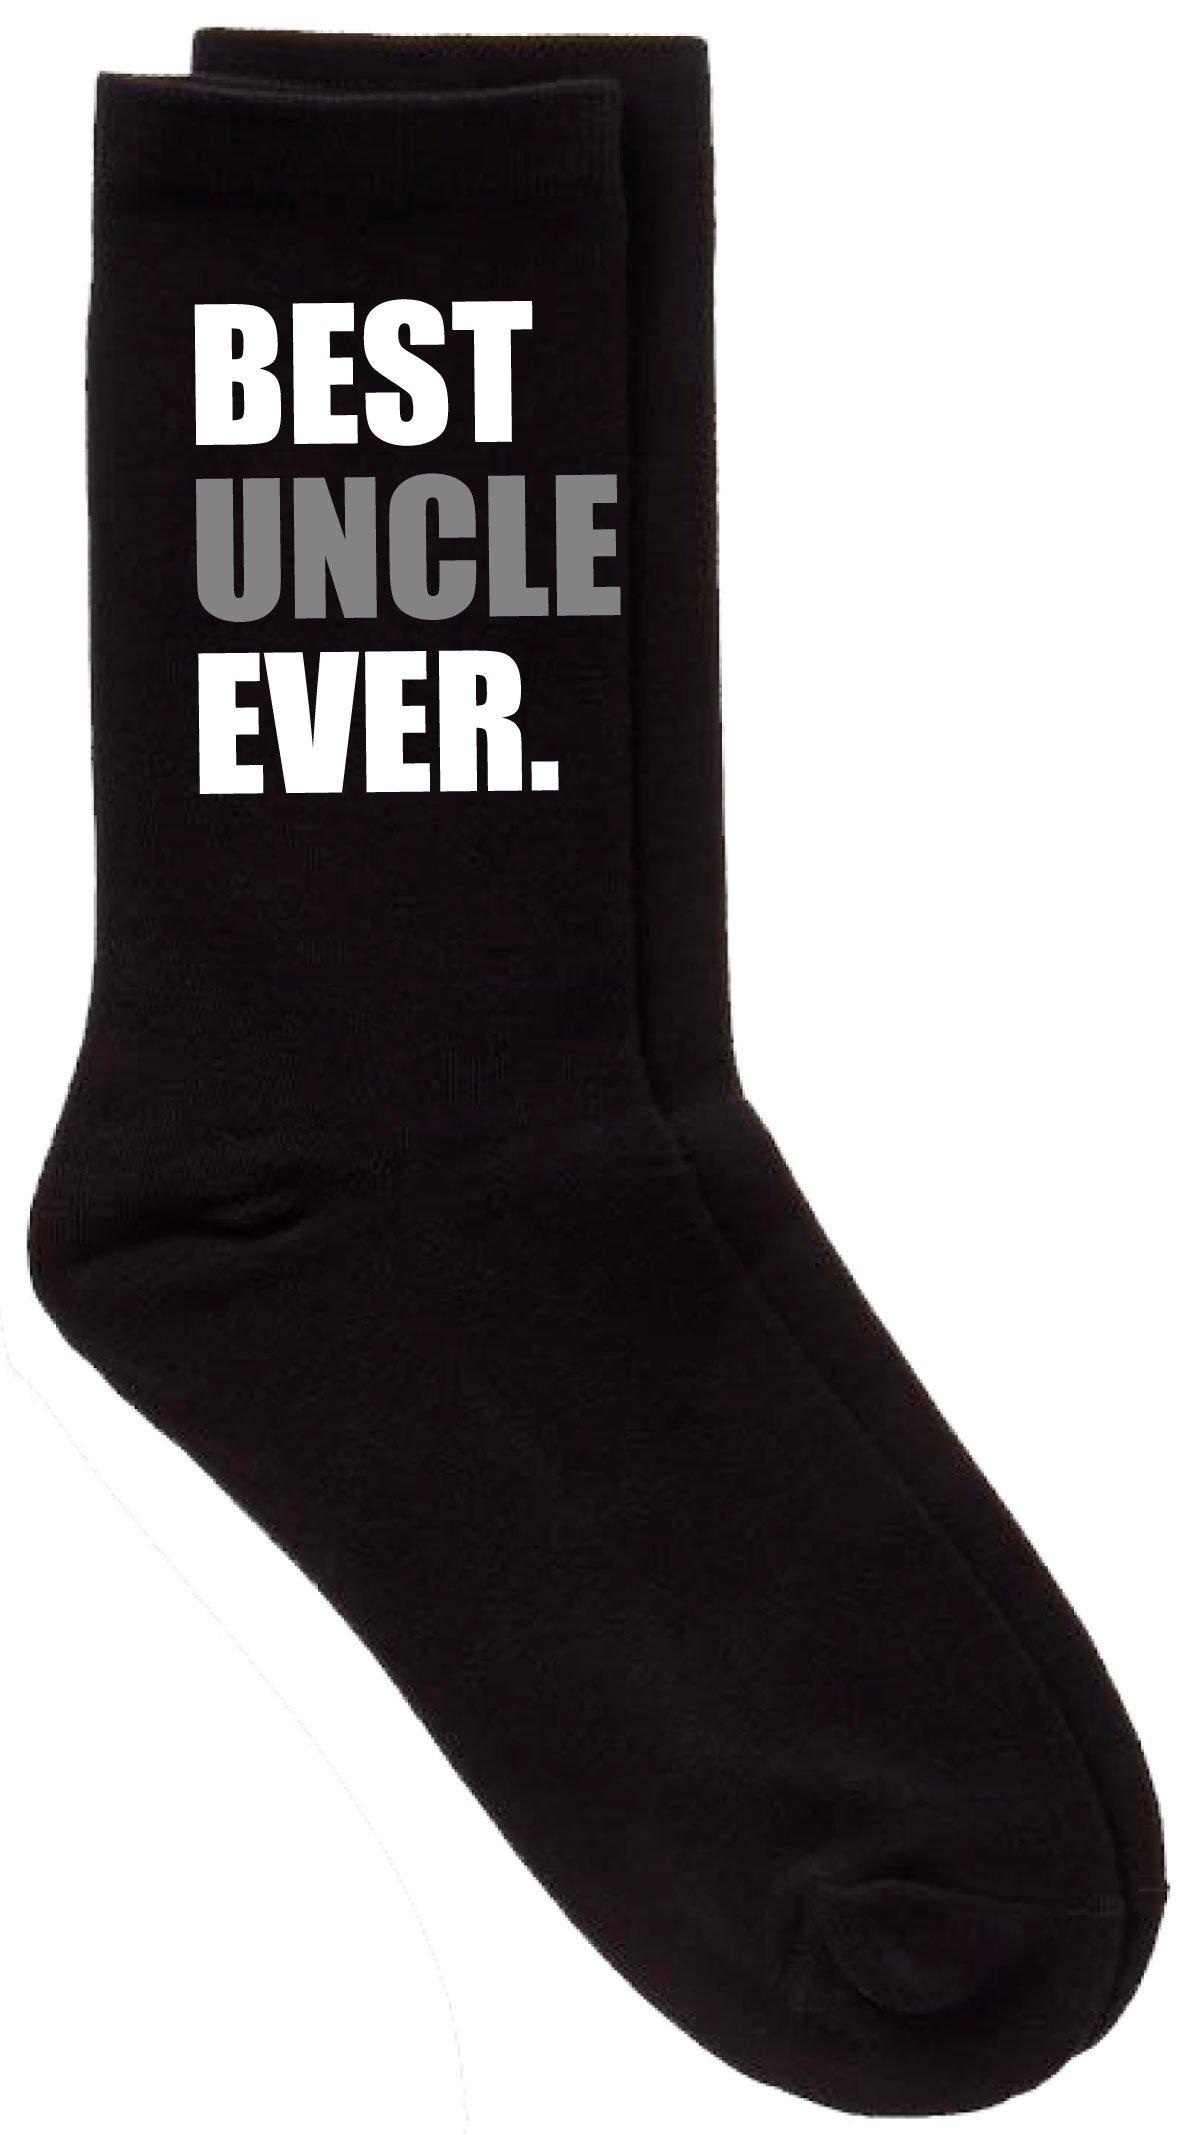 черные носки best dad ever v2 60 second makeover черный Черные носки Best Uncle Ever V2 60 SECOND MAKEOVER, черный